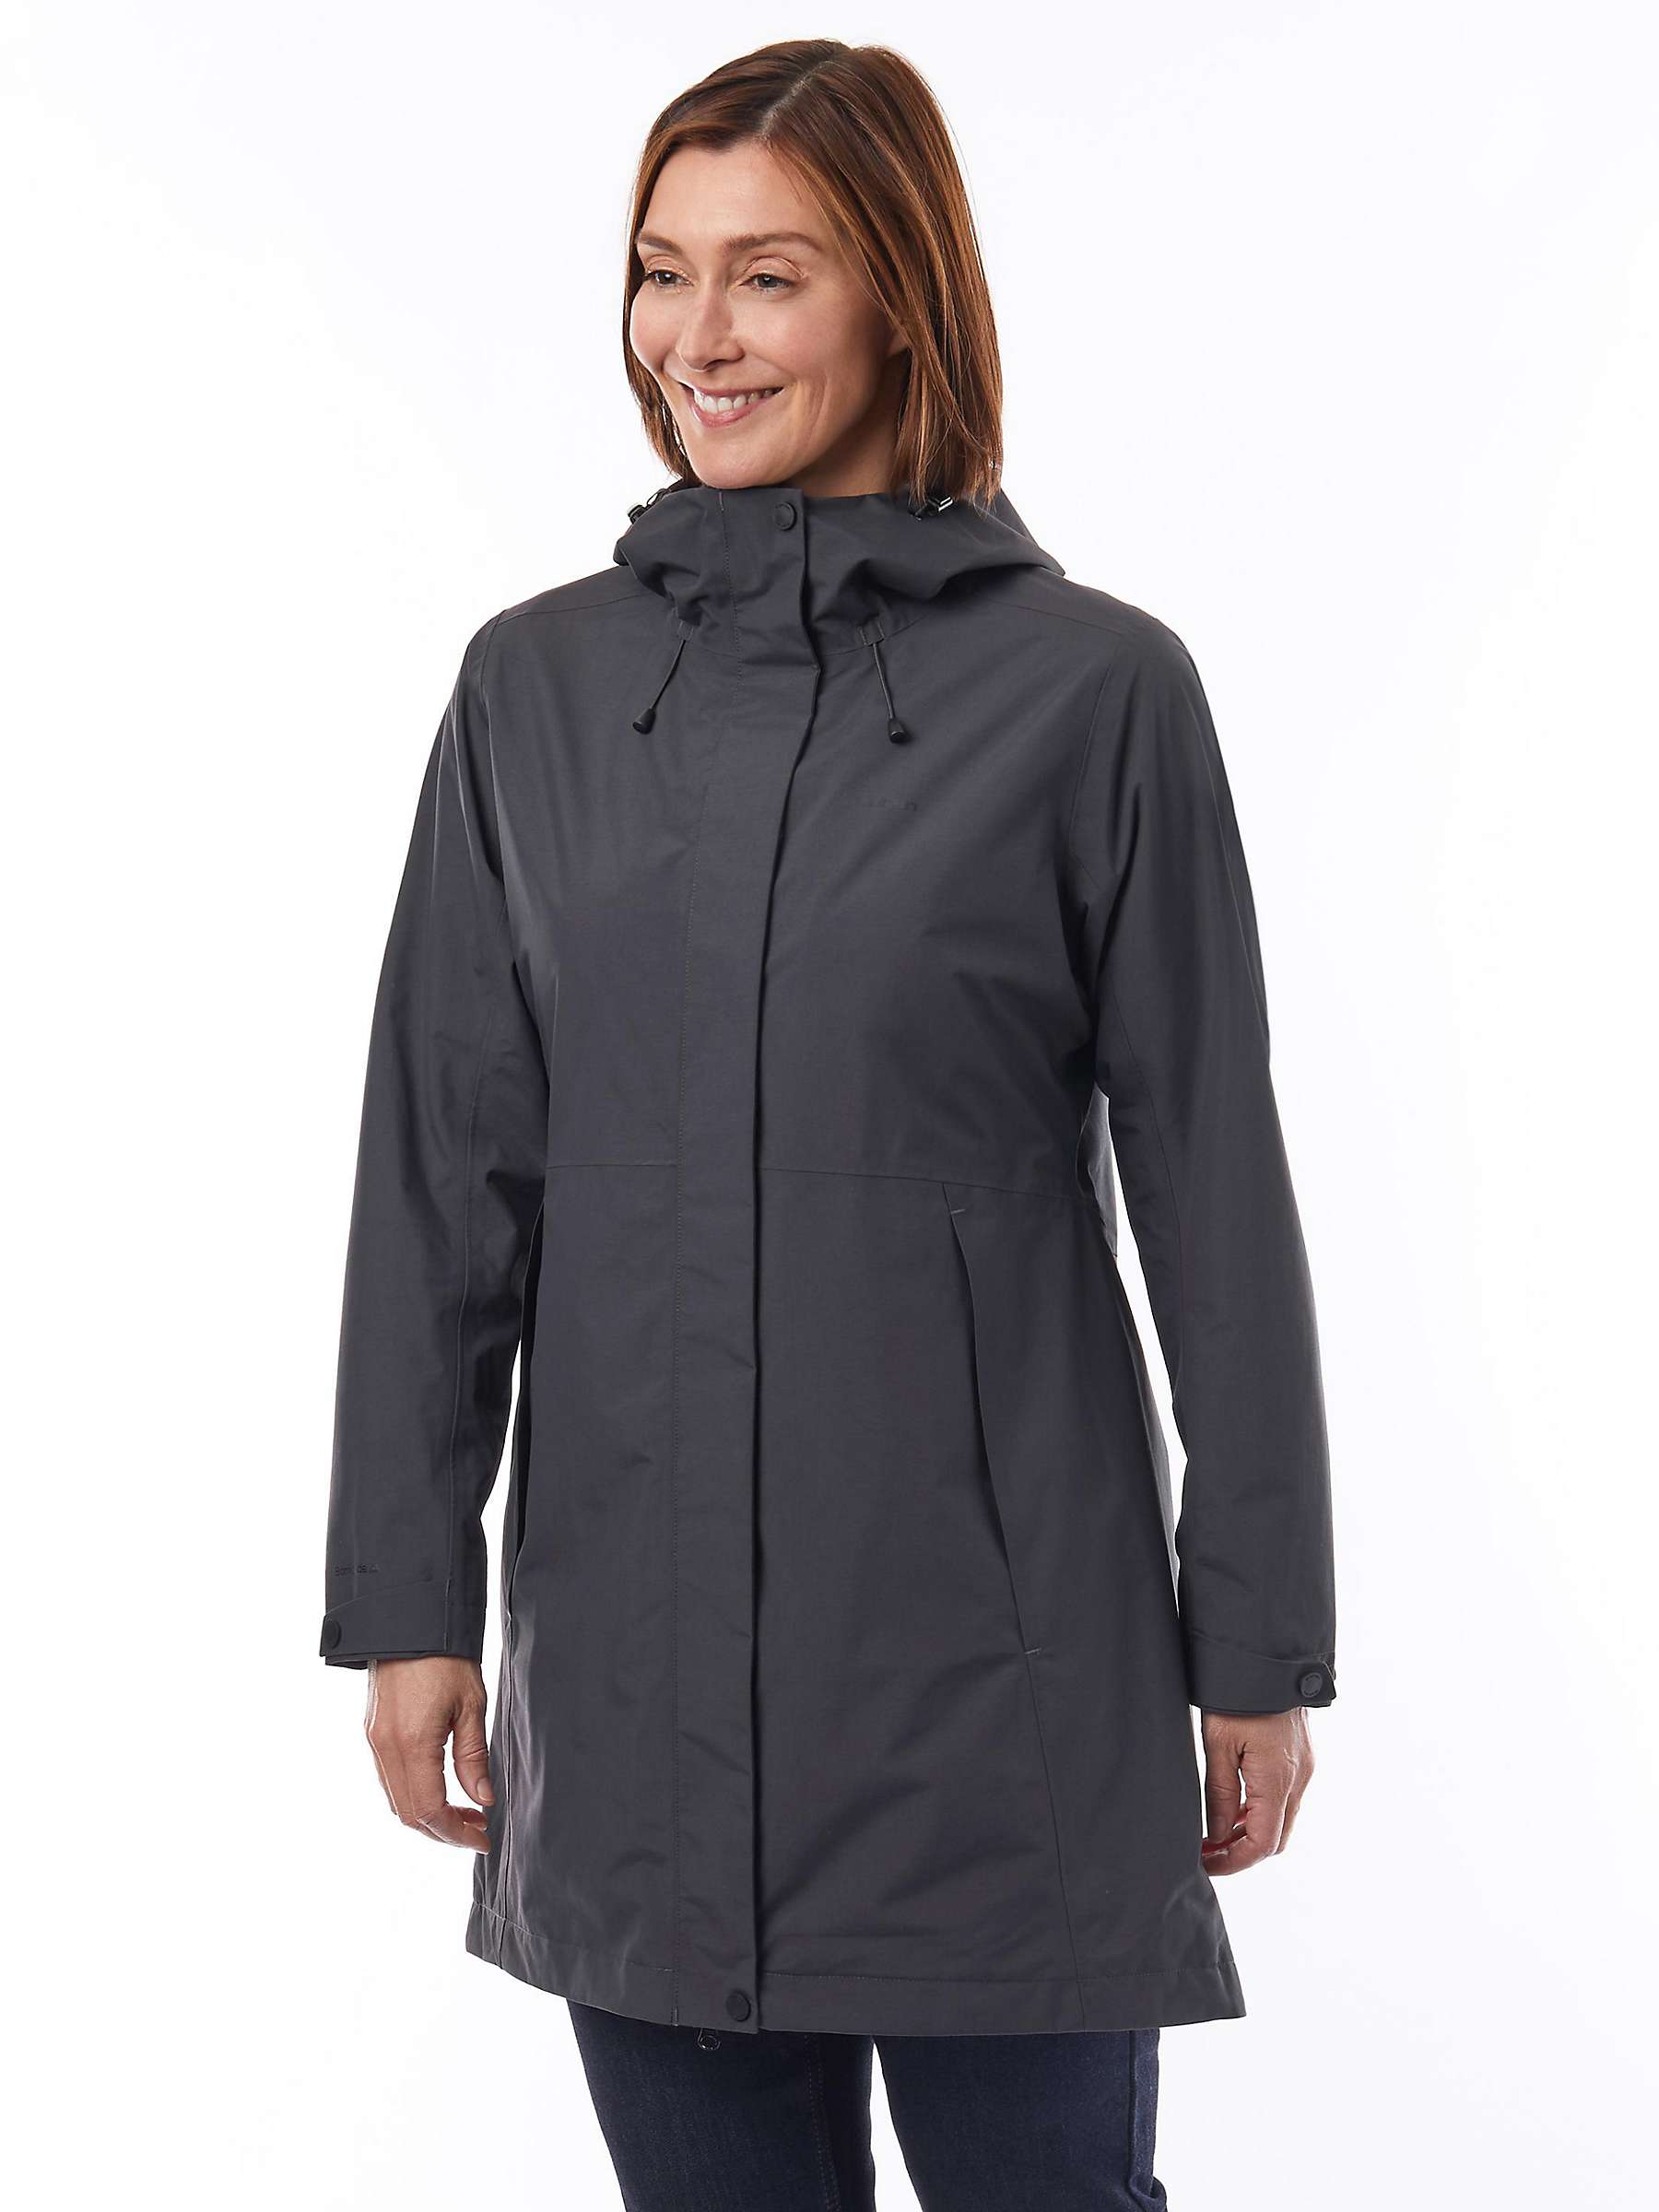 Buy Rohan Hampton Women's Waterproof Jacket Online at johnlewis.com